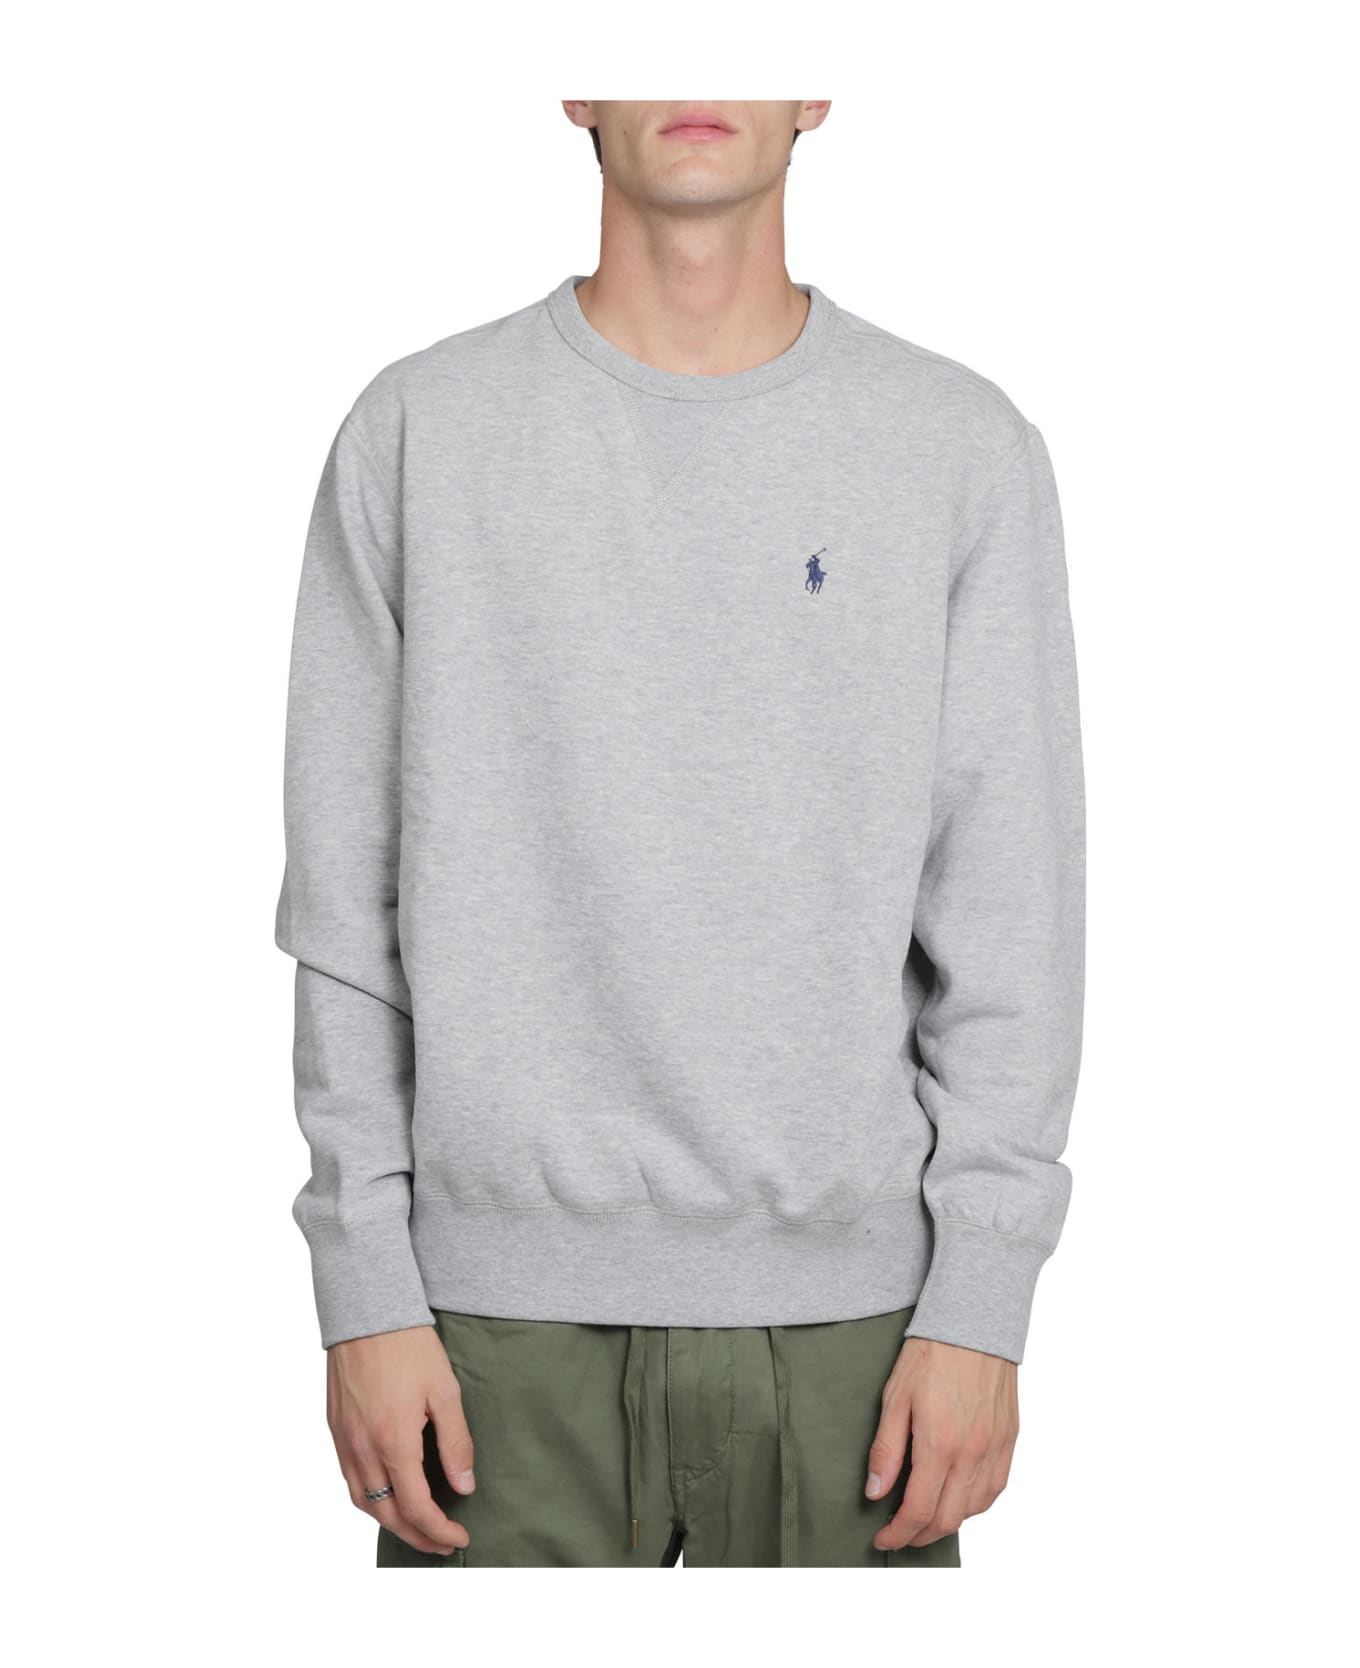 Ralph Lauren Grey Crewneck Sweater - GREY